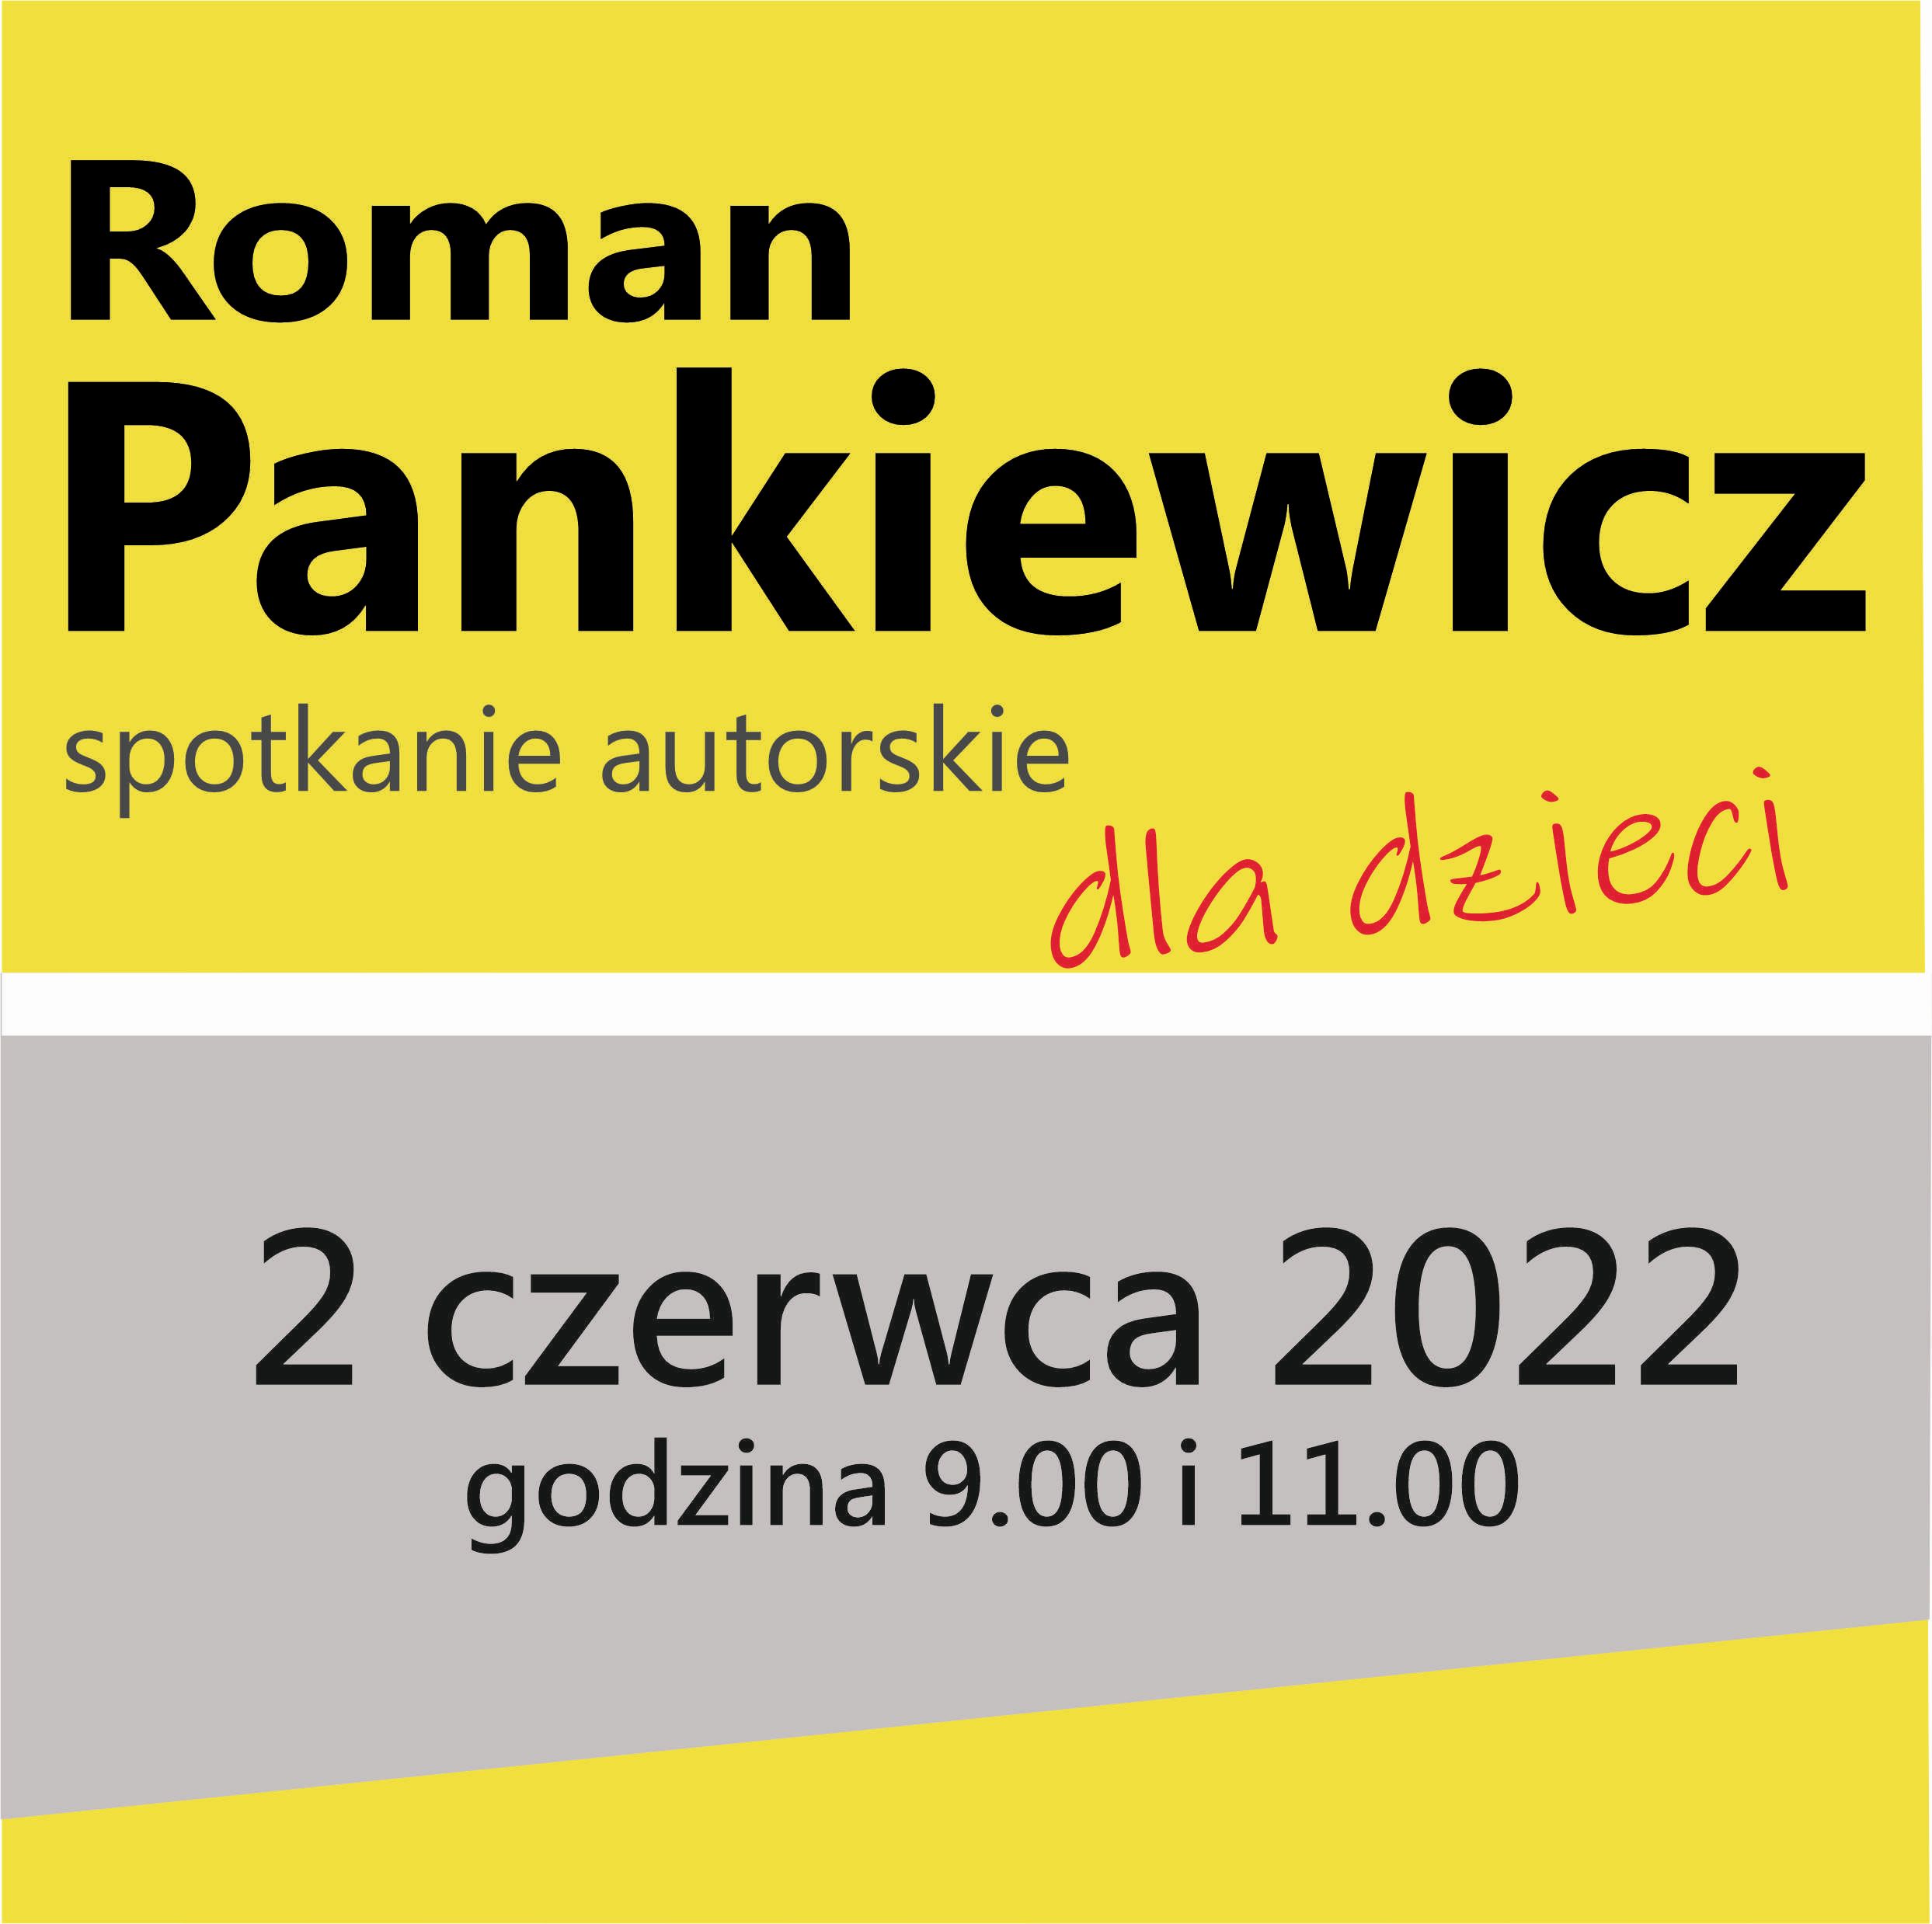 ROMAN PANKIEWICZ – SPOTKANIE AUTORSKIE DLA DZIECI – 2 Czerwca 2022, Godz. 9.00 I 11.00